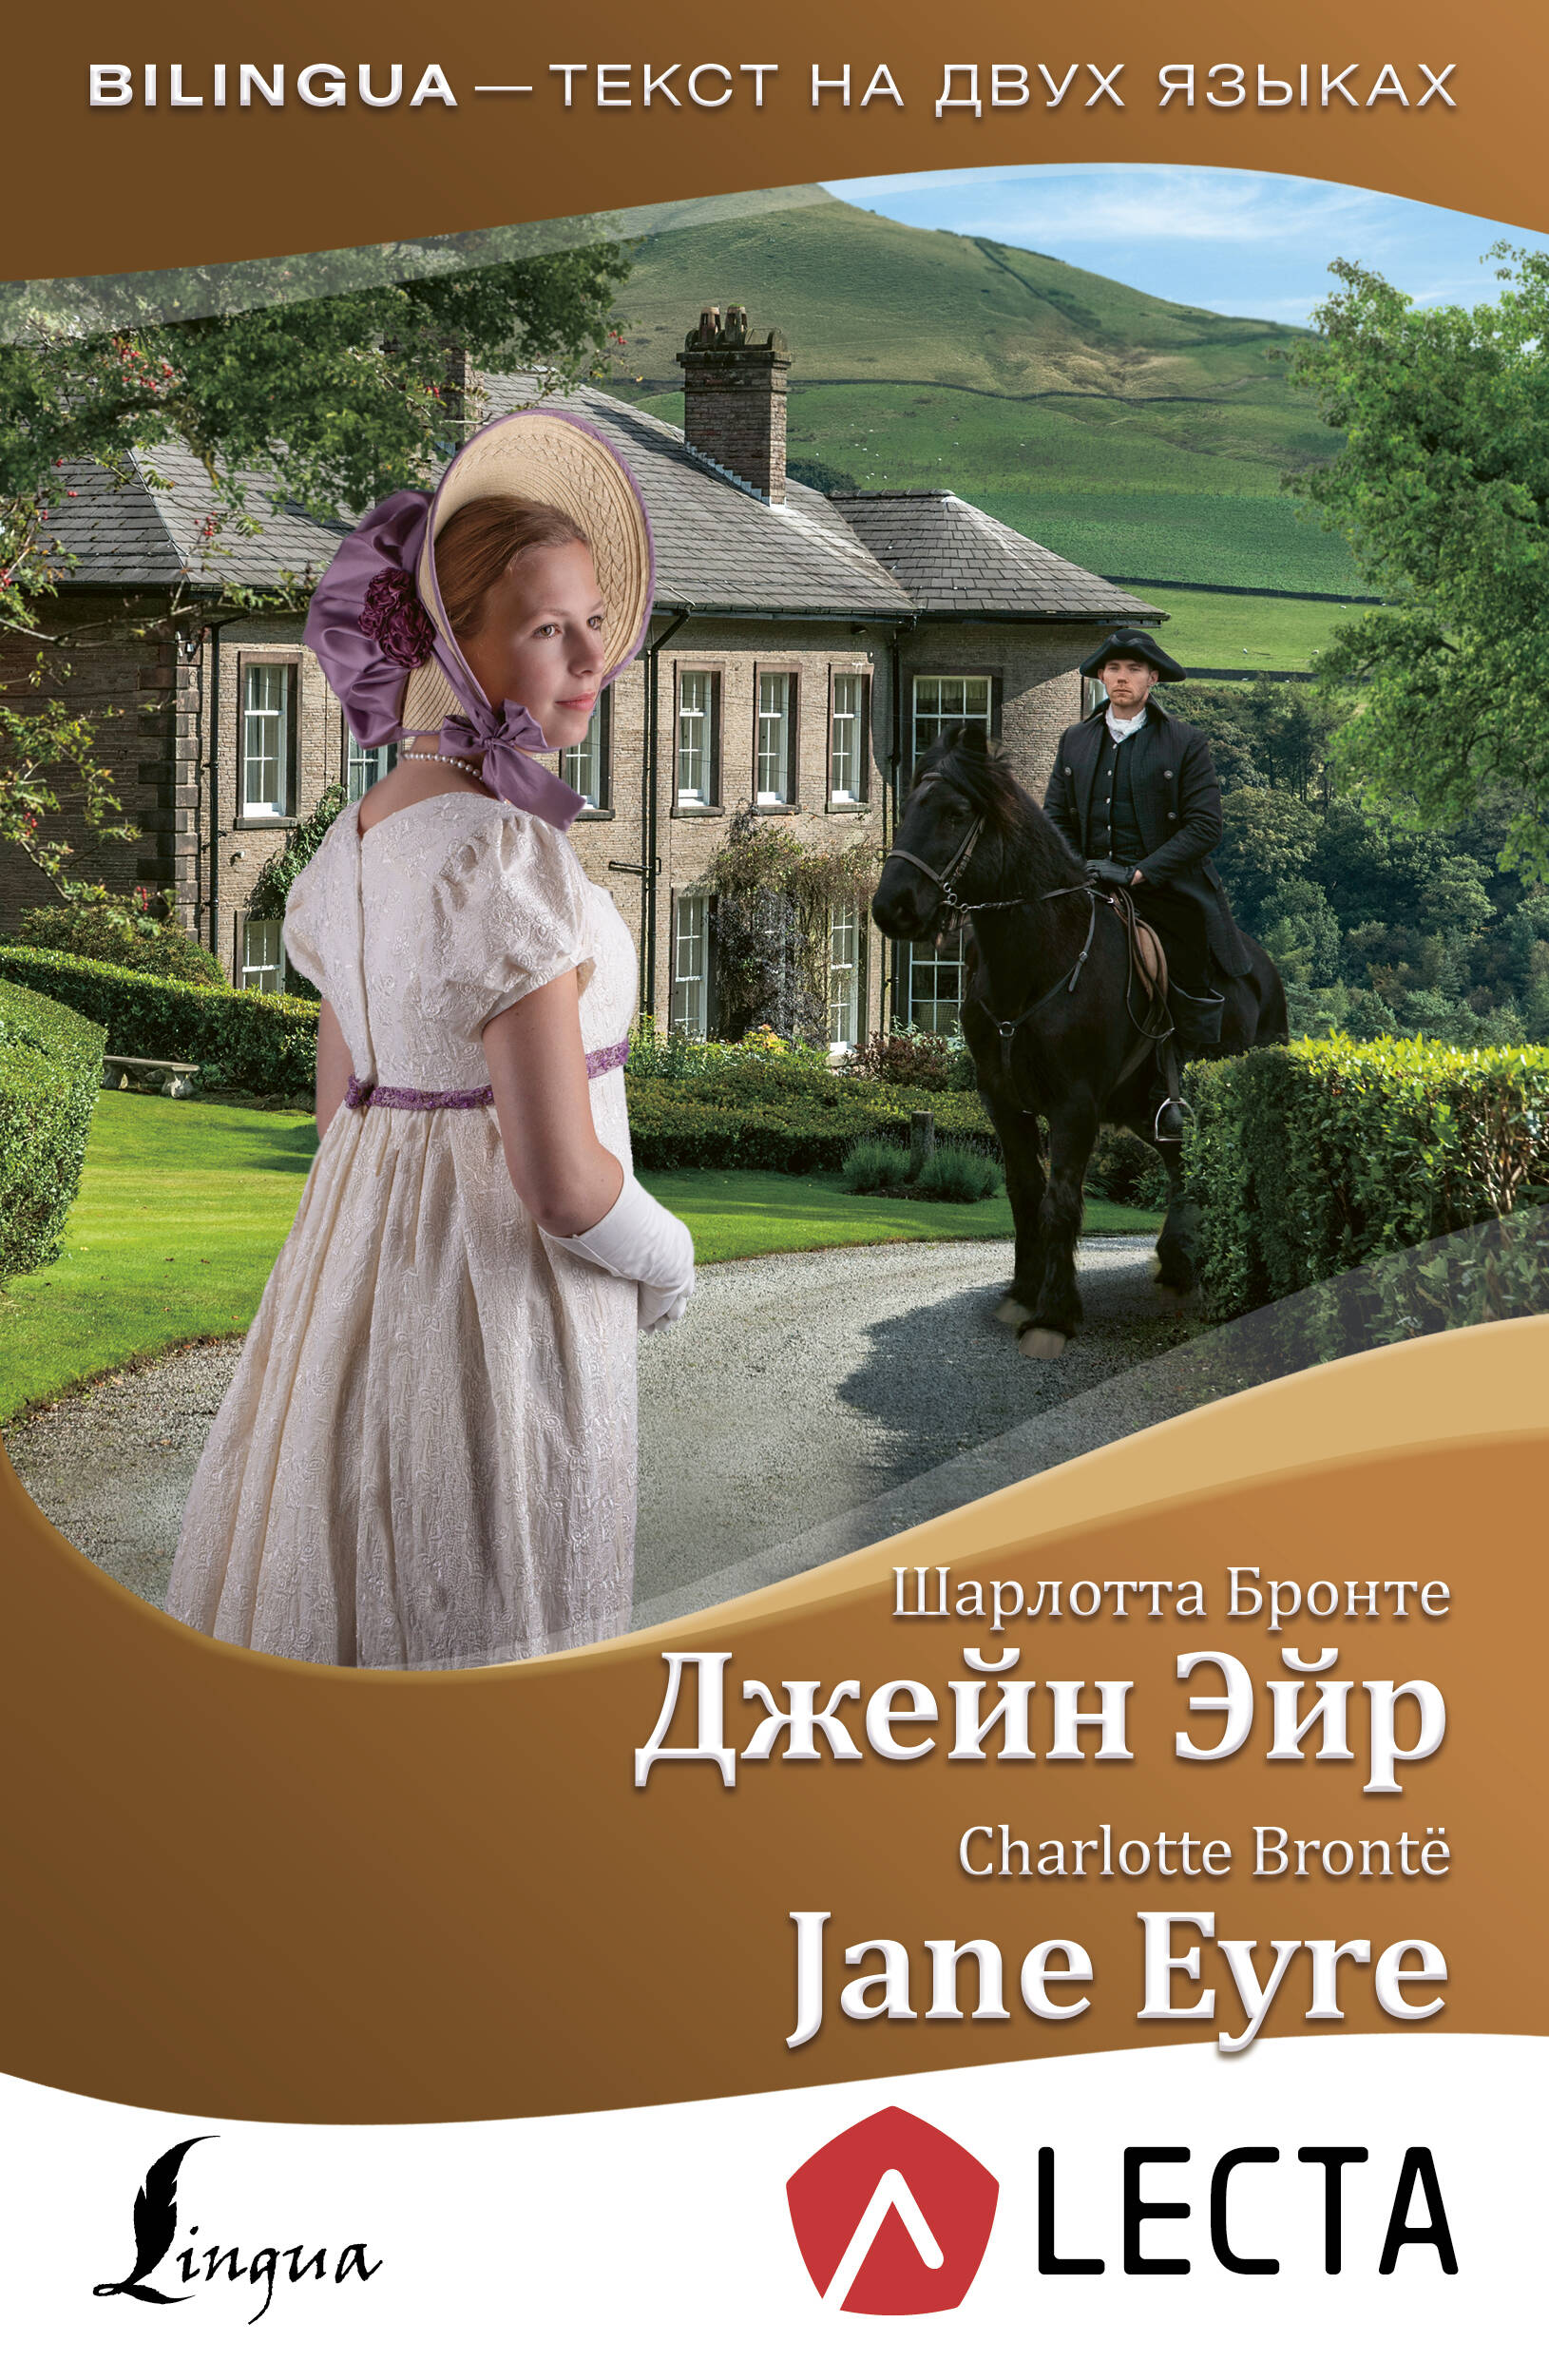 Бронте Шарлотта Джейн Эйр = Jane Eyre + аудиоприложение LECTA - страница 0